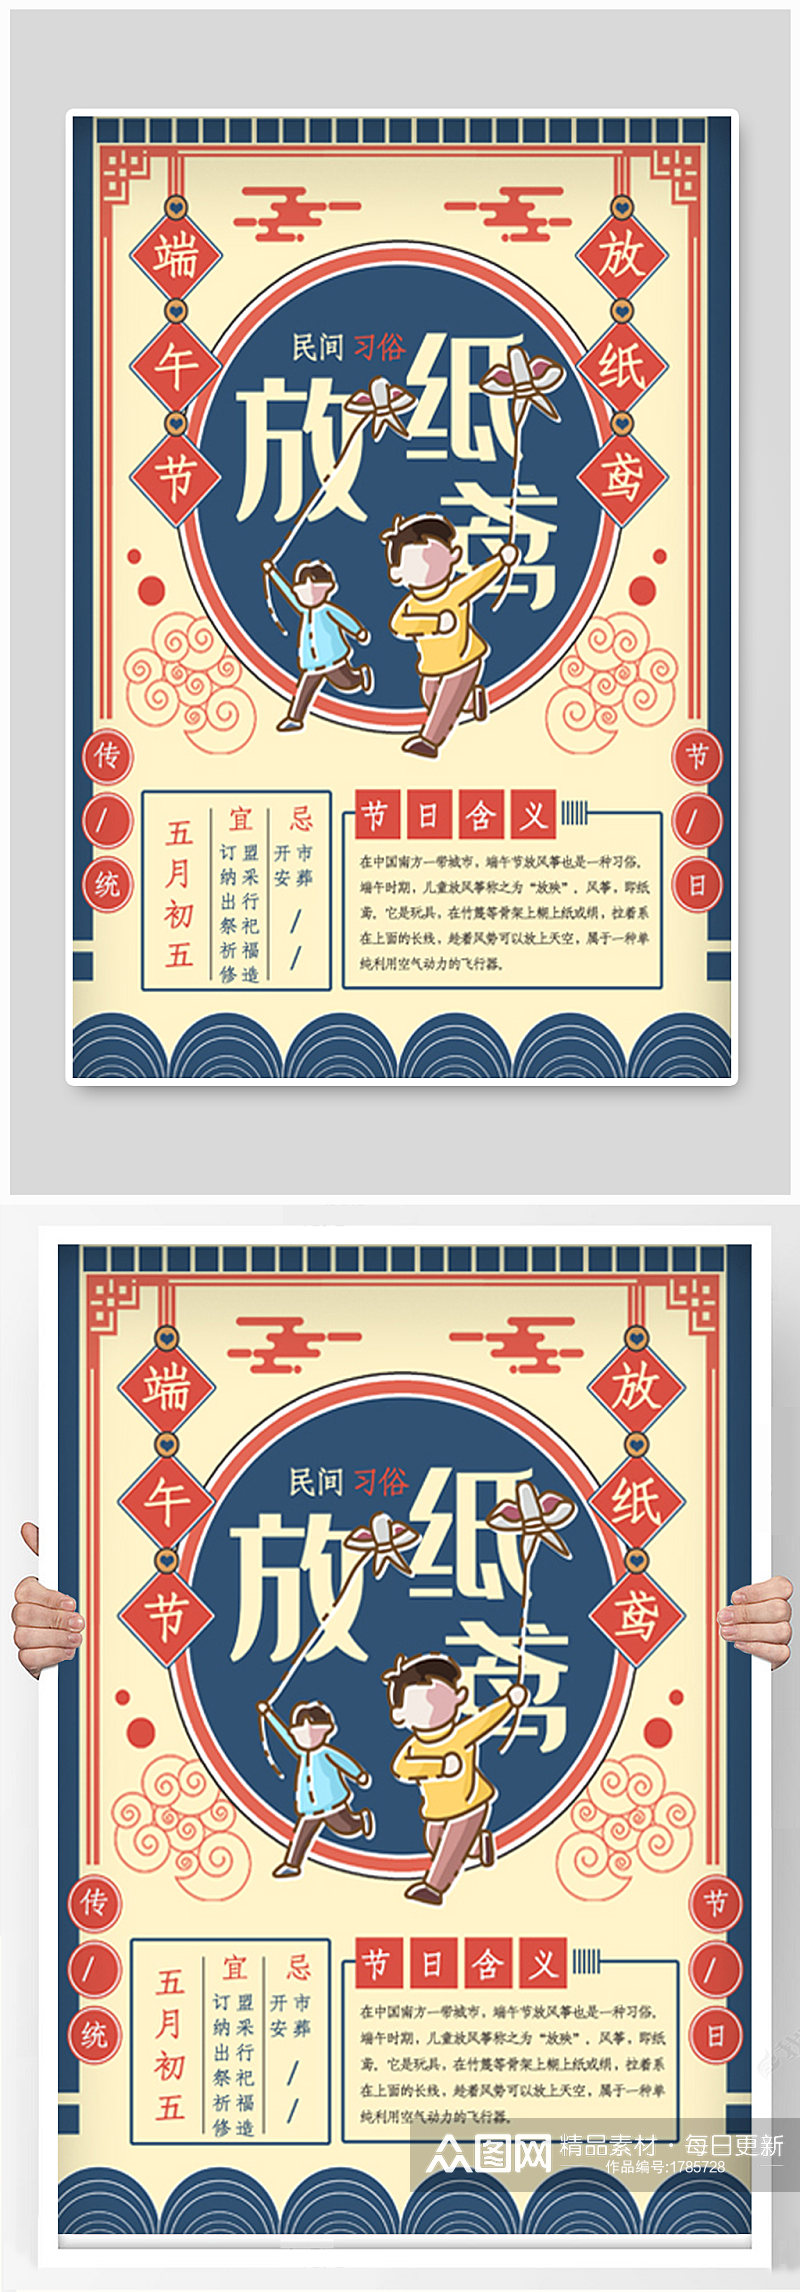 复古设计放纸鸢端午节日民间习俗海报素材